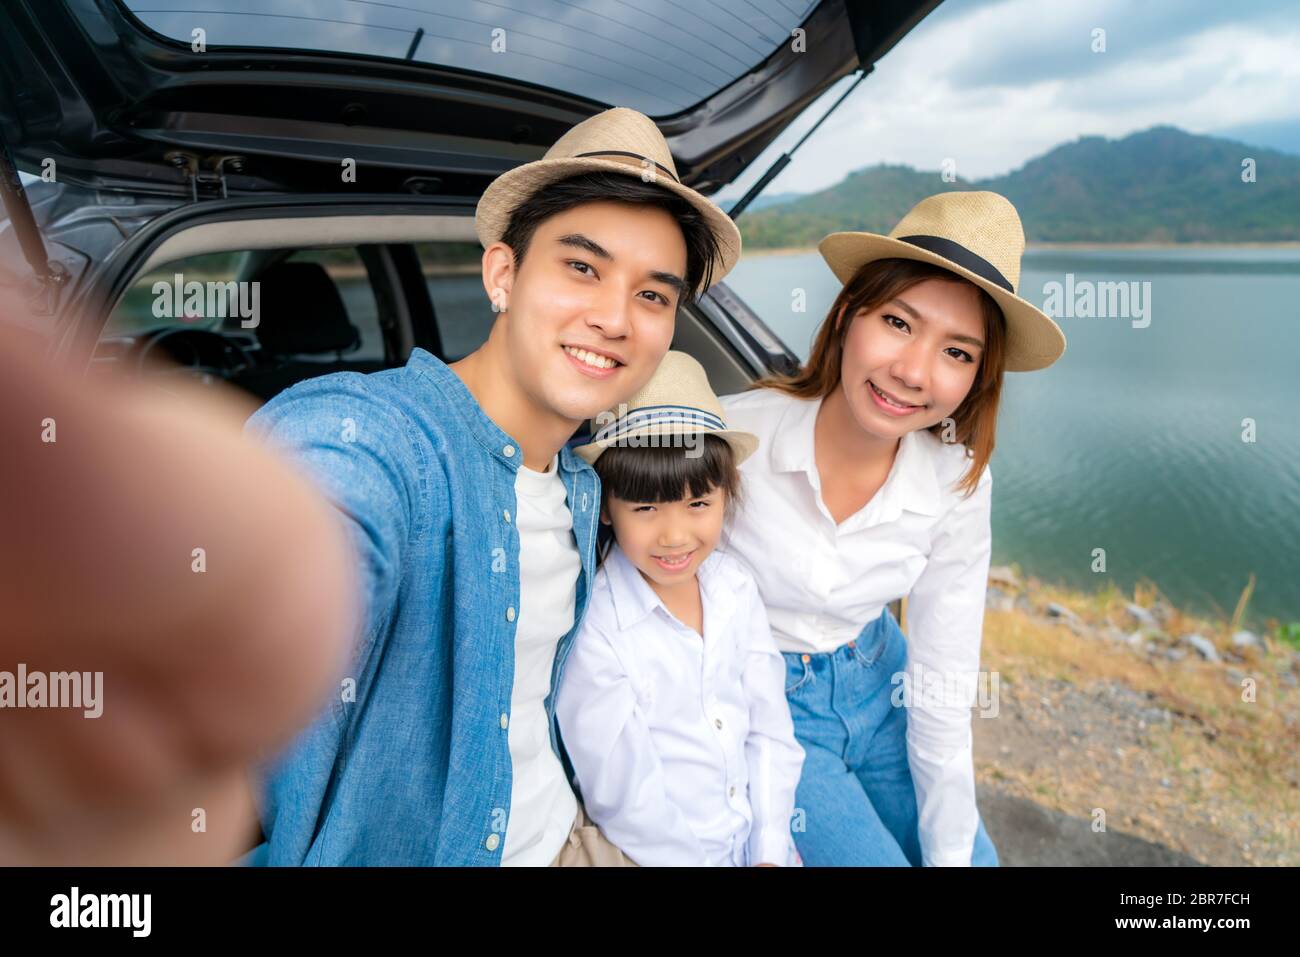 Porträt der asiatischen Familie, die mit Vater, Mutter und Tochter selfie im Auto sitzt, mit See- und Bergblick, mit Smrtphone während des gemeinsamen Urlaubs in ho Stockfoto